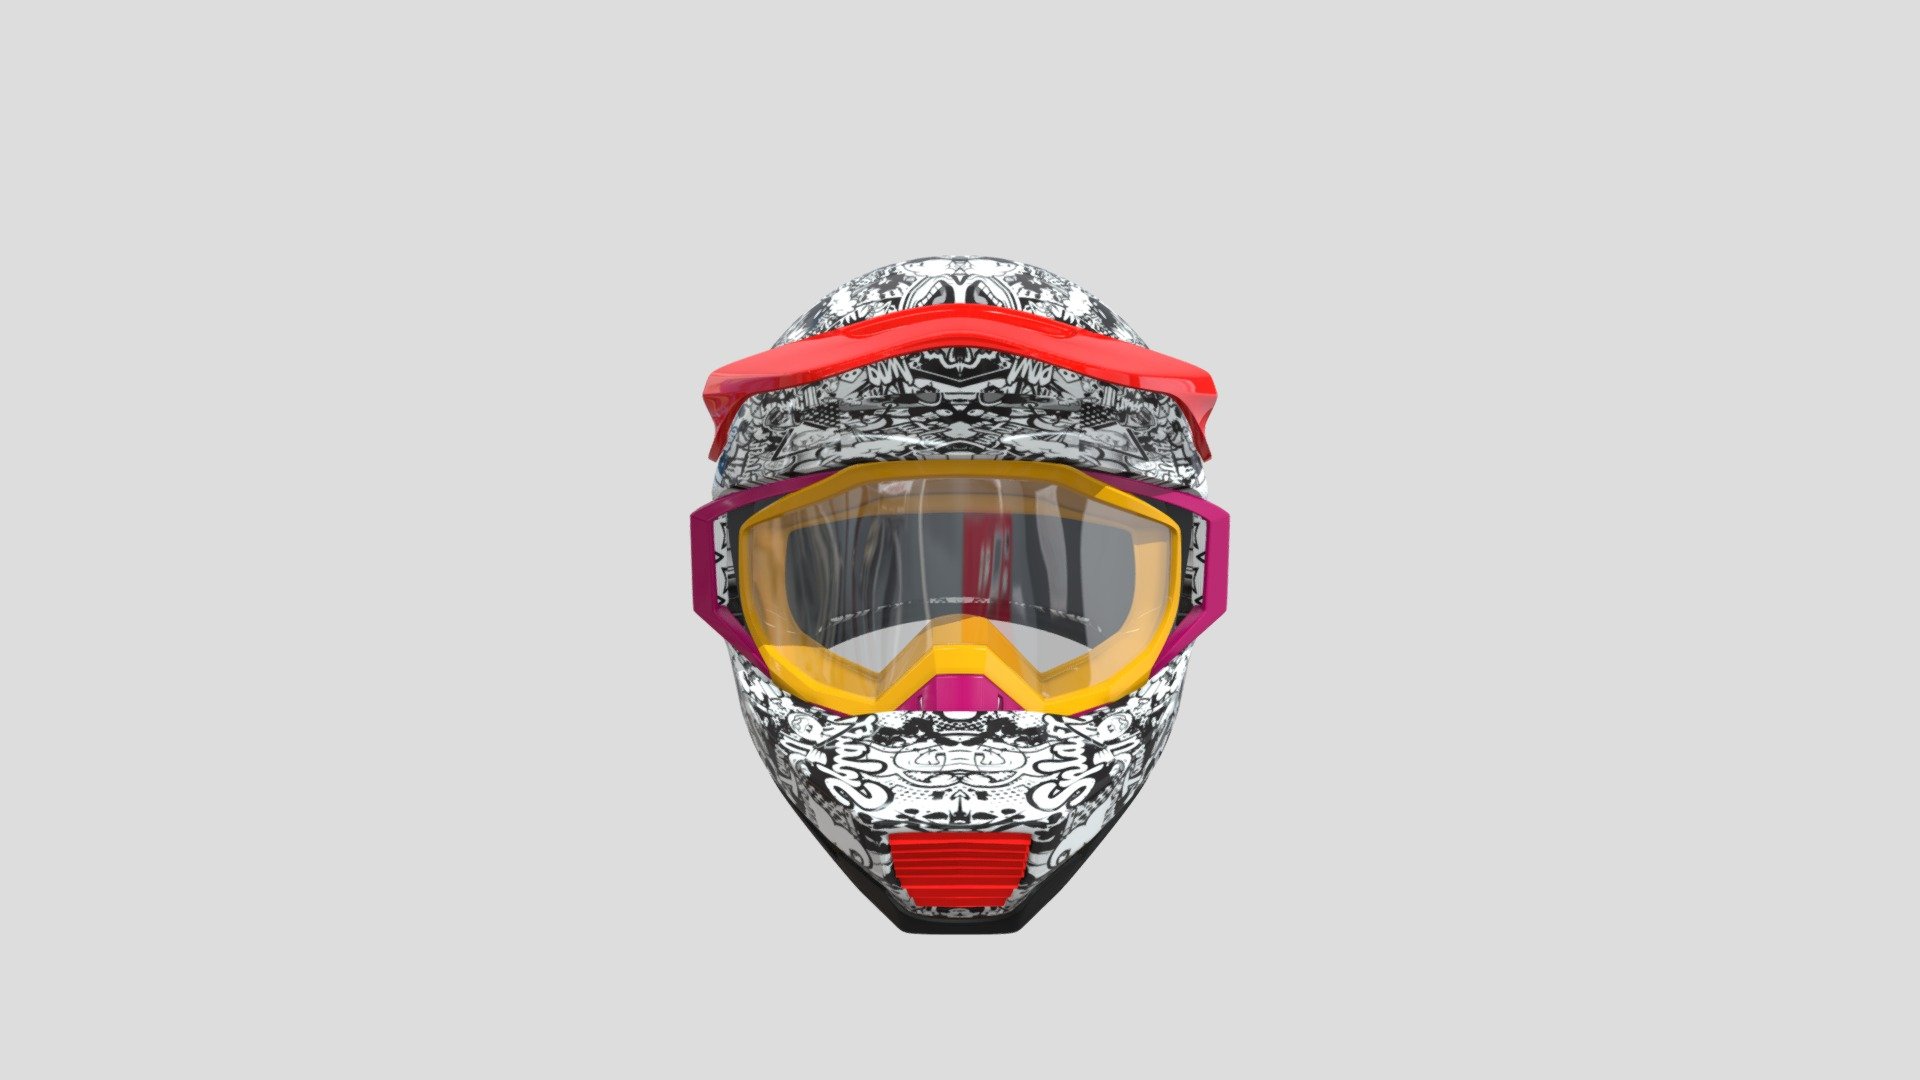 Sport helmet and glasses for character - HelmentForLeo - 3D model by goviazin.nikolai 3d model